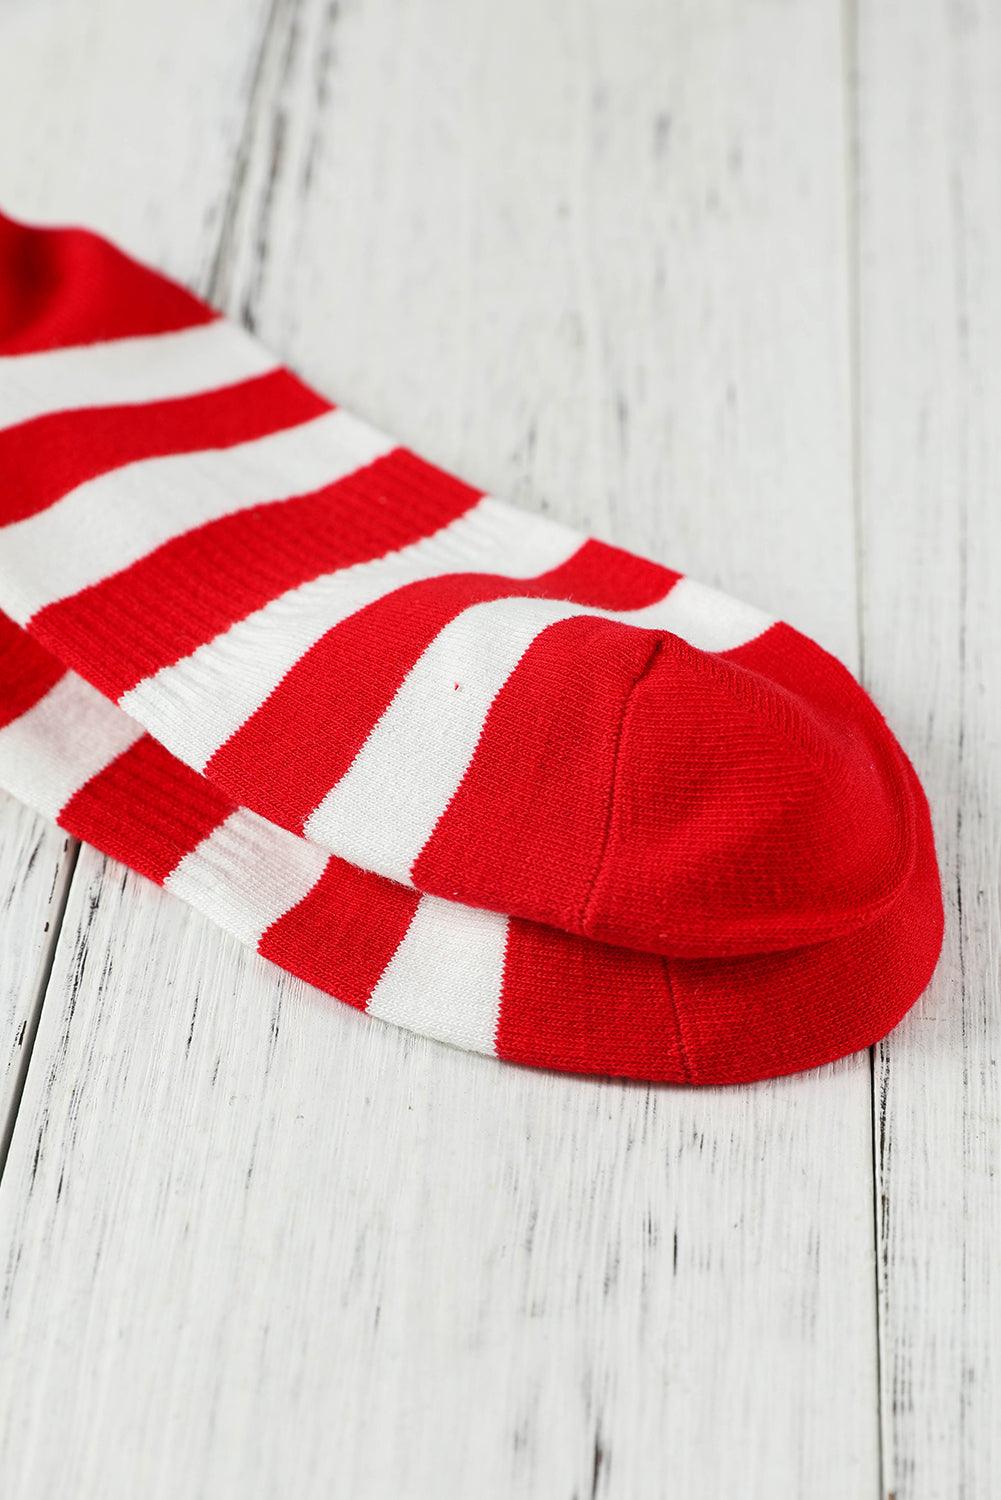 Fiery Red Star and Striped Print Ribbed Knit Crew Socks - L & M Kee, LLC